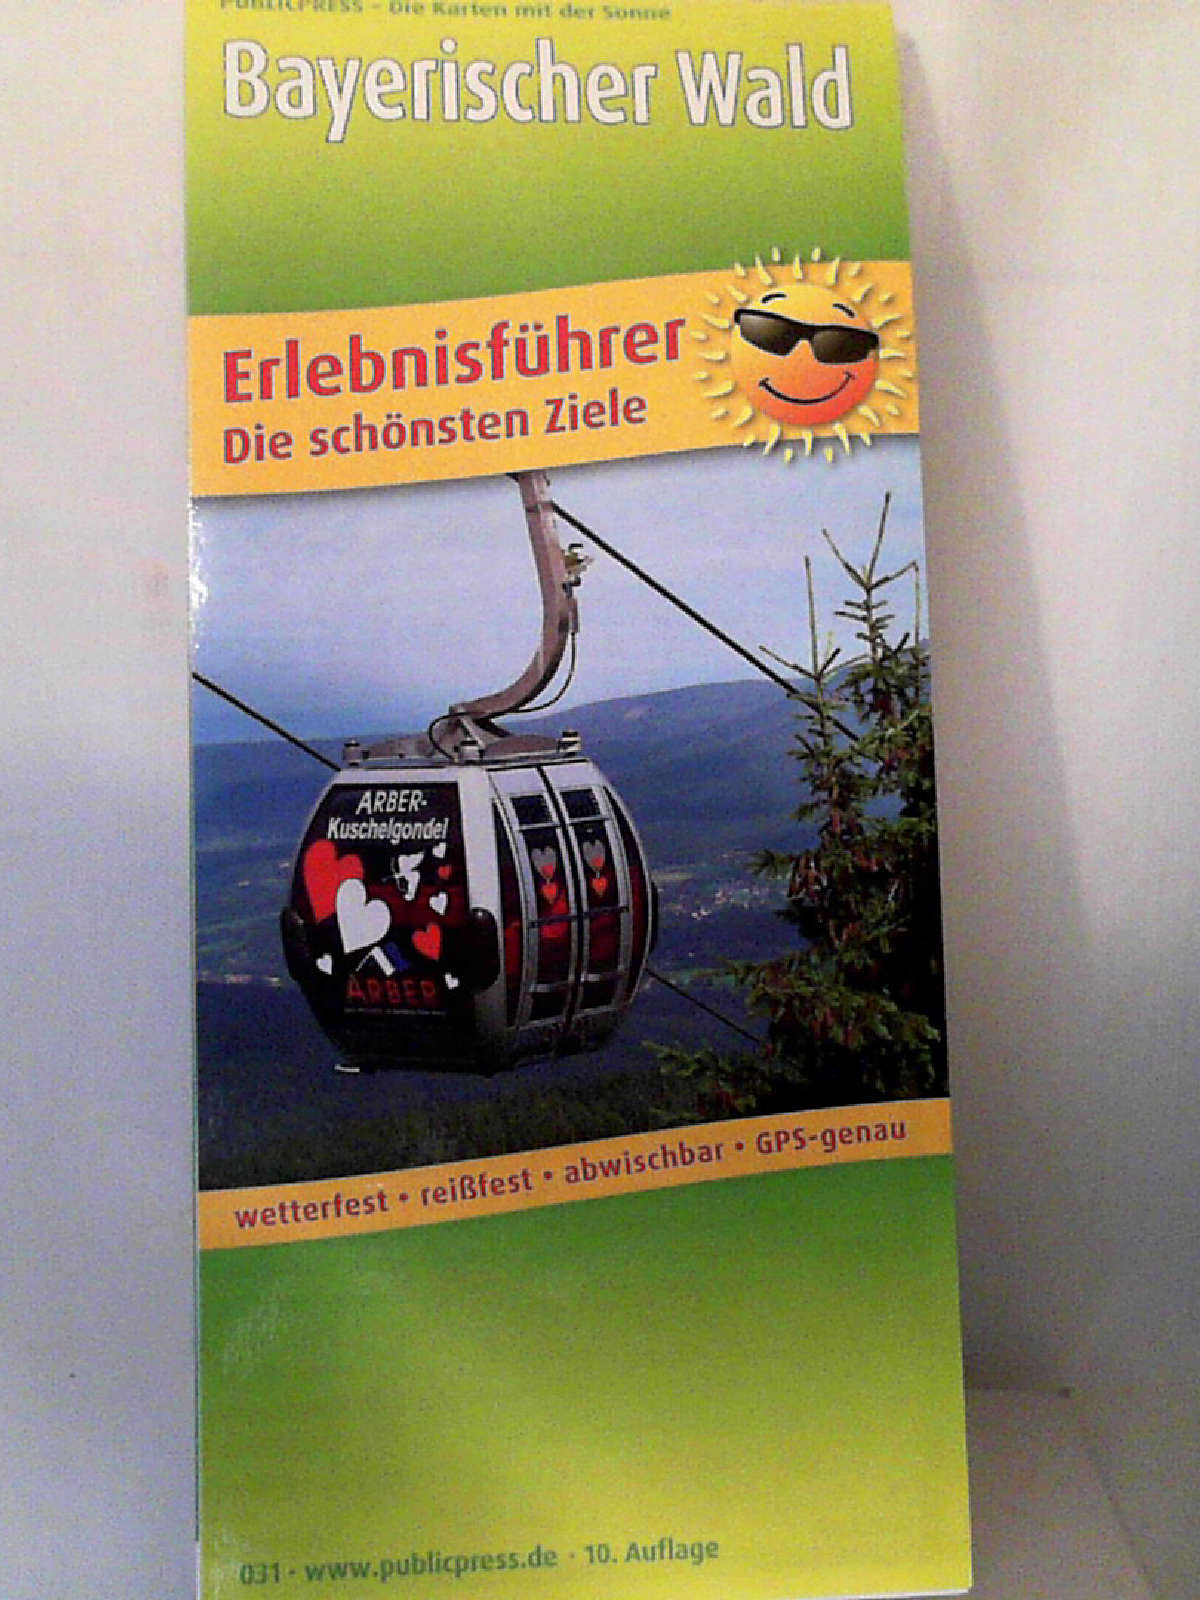 Bayerischer Wald: Erlebnisführer, Freizeitkarte mit Informationen zu Freizeiteinrichtungen auf der Kartenrückseite, wetterfest, reißfest, abwischbar, GPS-genau. 1:160000 (Erlebnisführer / EF)